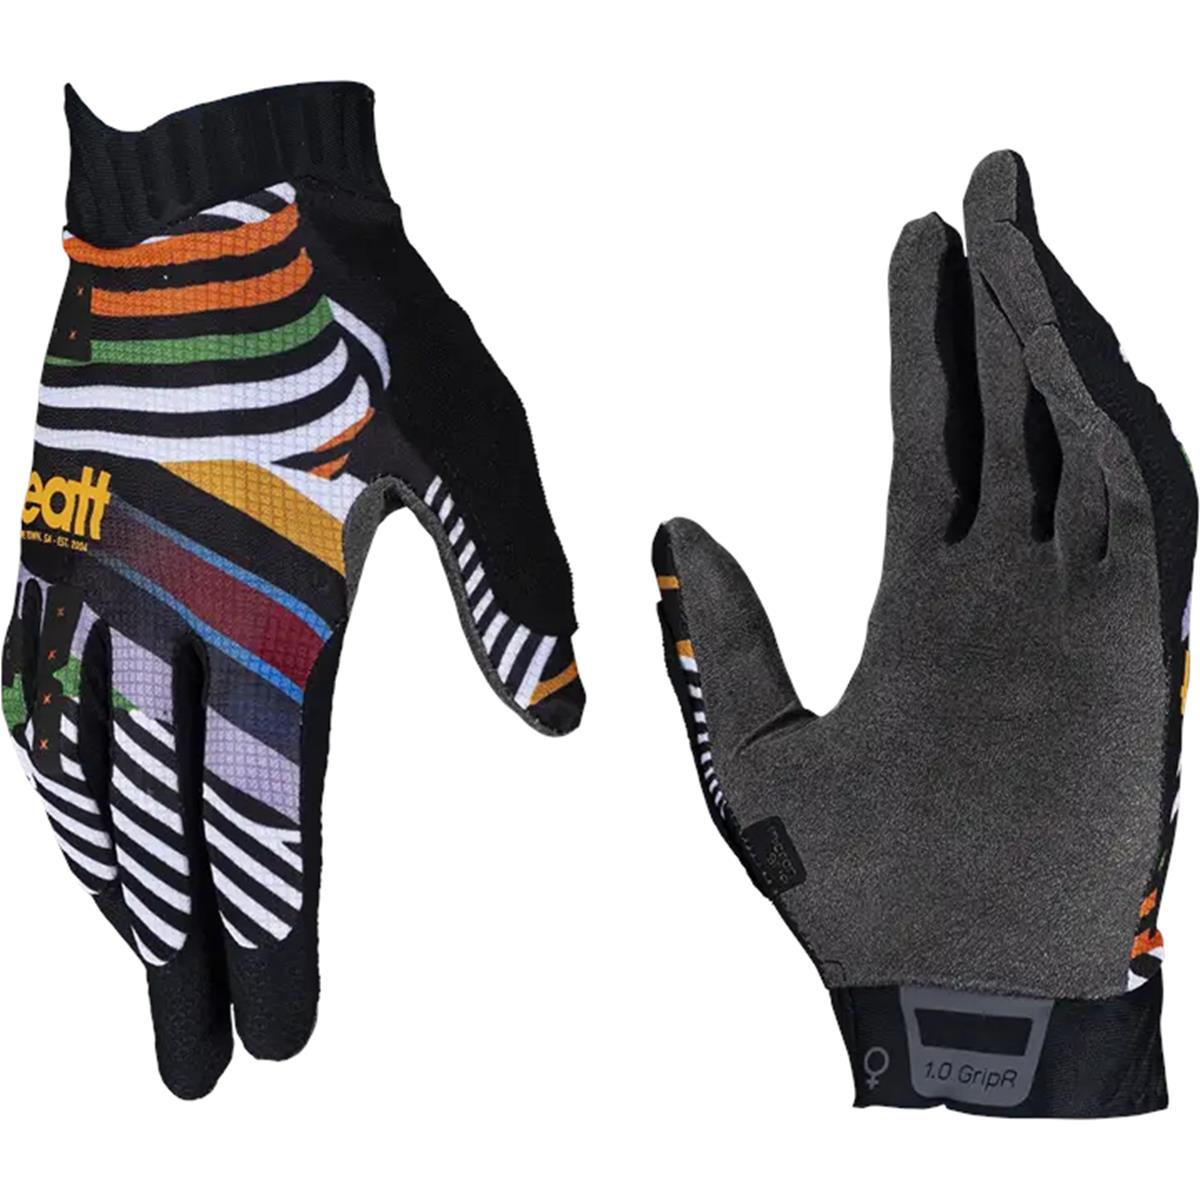 Leatt Girls MTB-Handschuhe 1.0 GripR Stripes